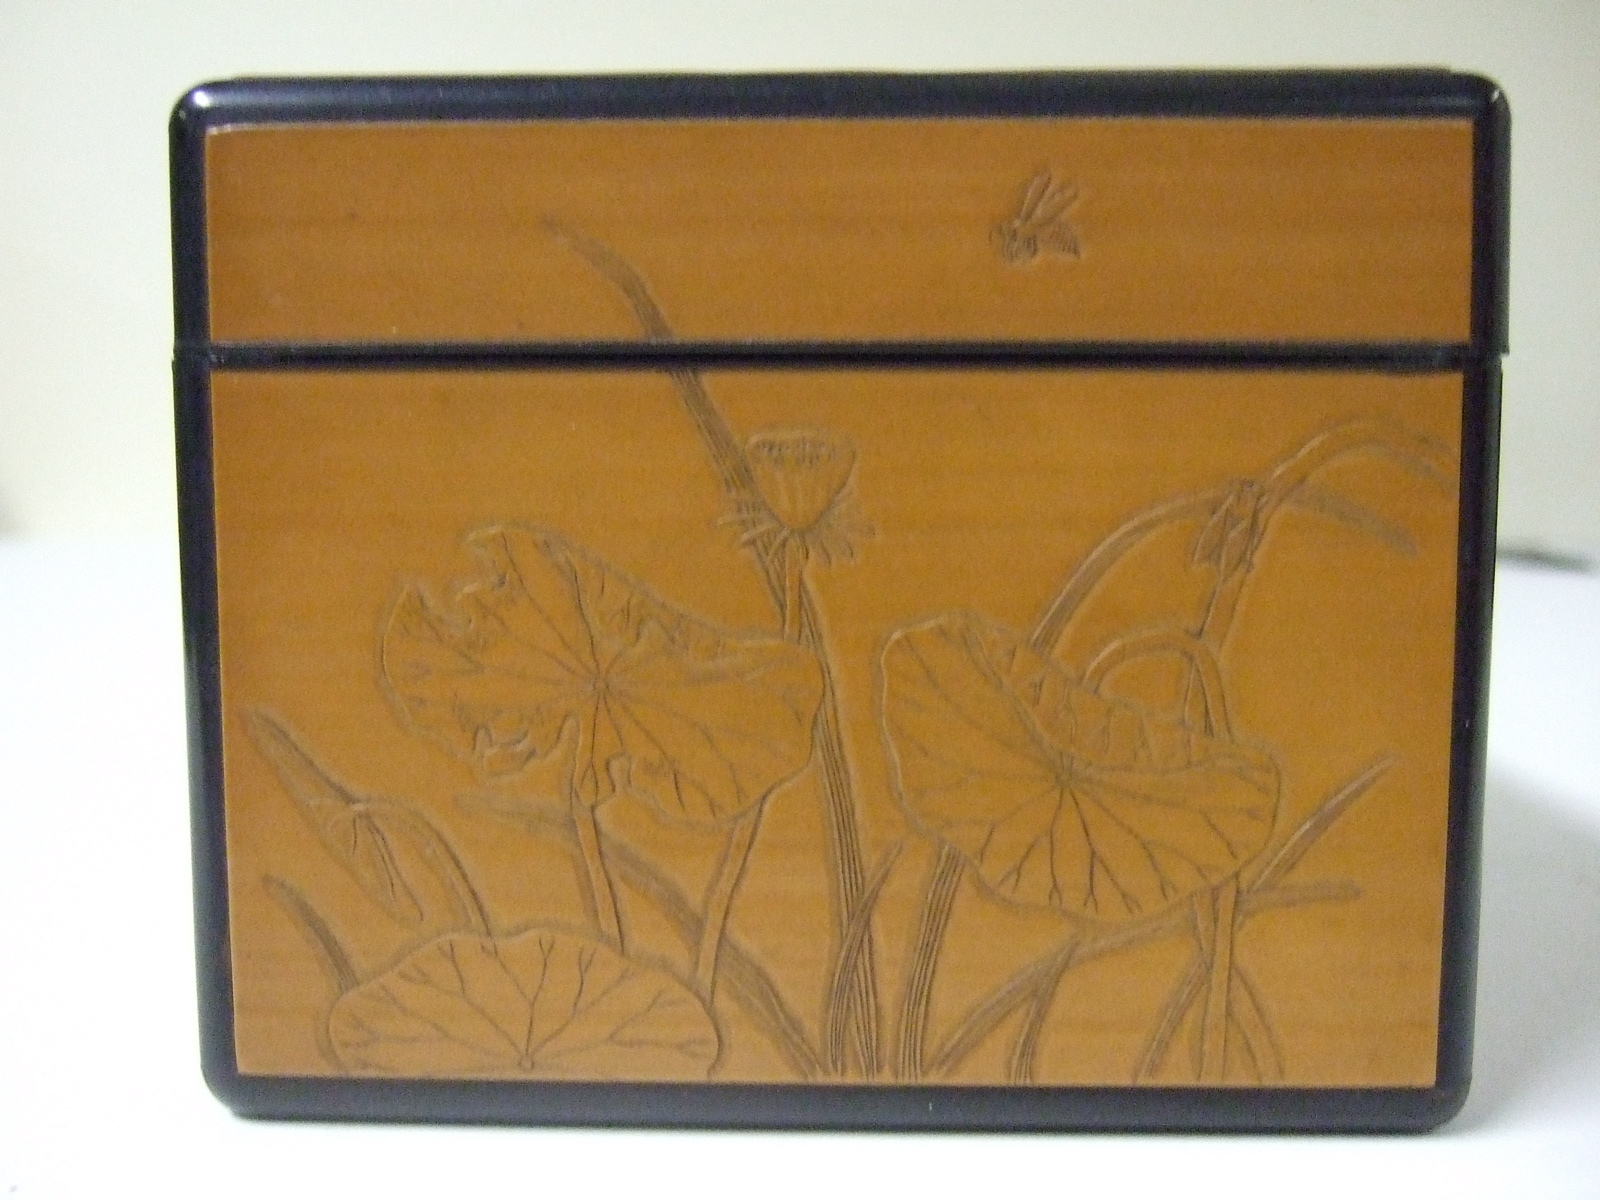 Boite asiatique en bois à filet noir aux angles et à décor de lotus et de grenouilles. (titre factice)